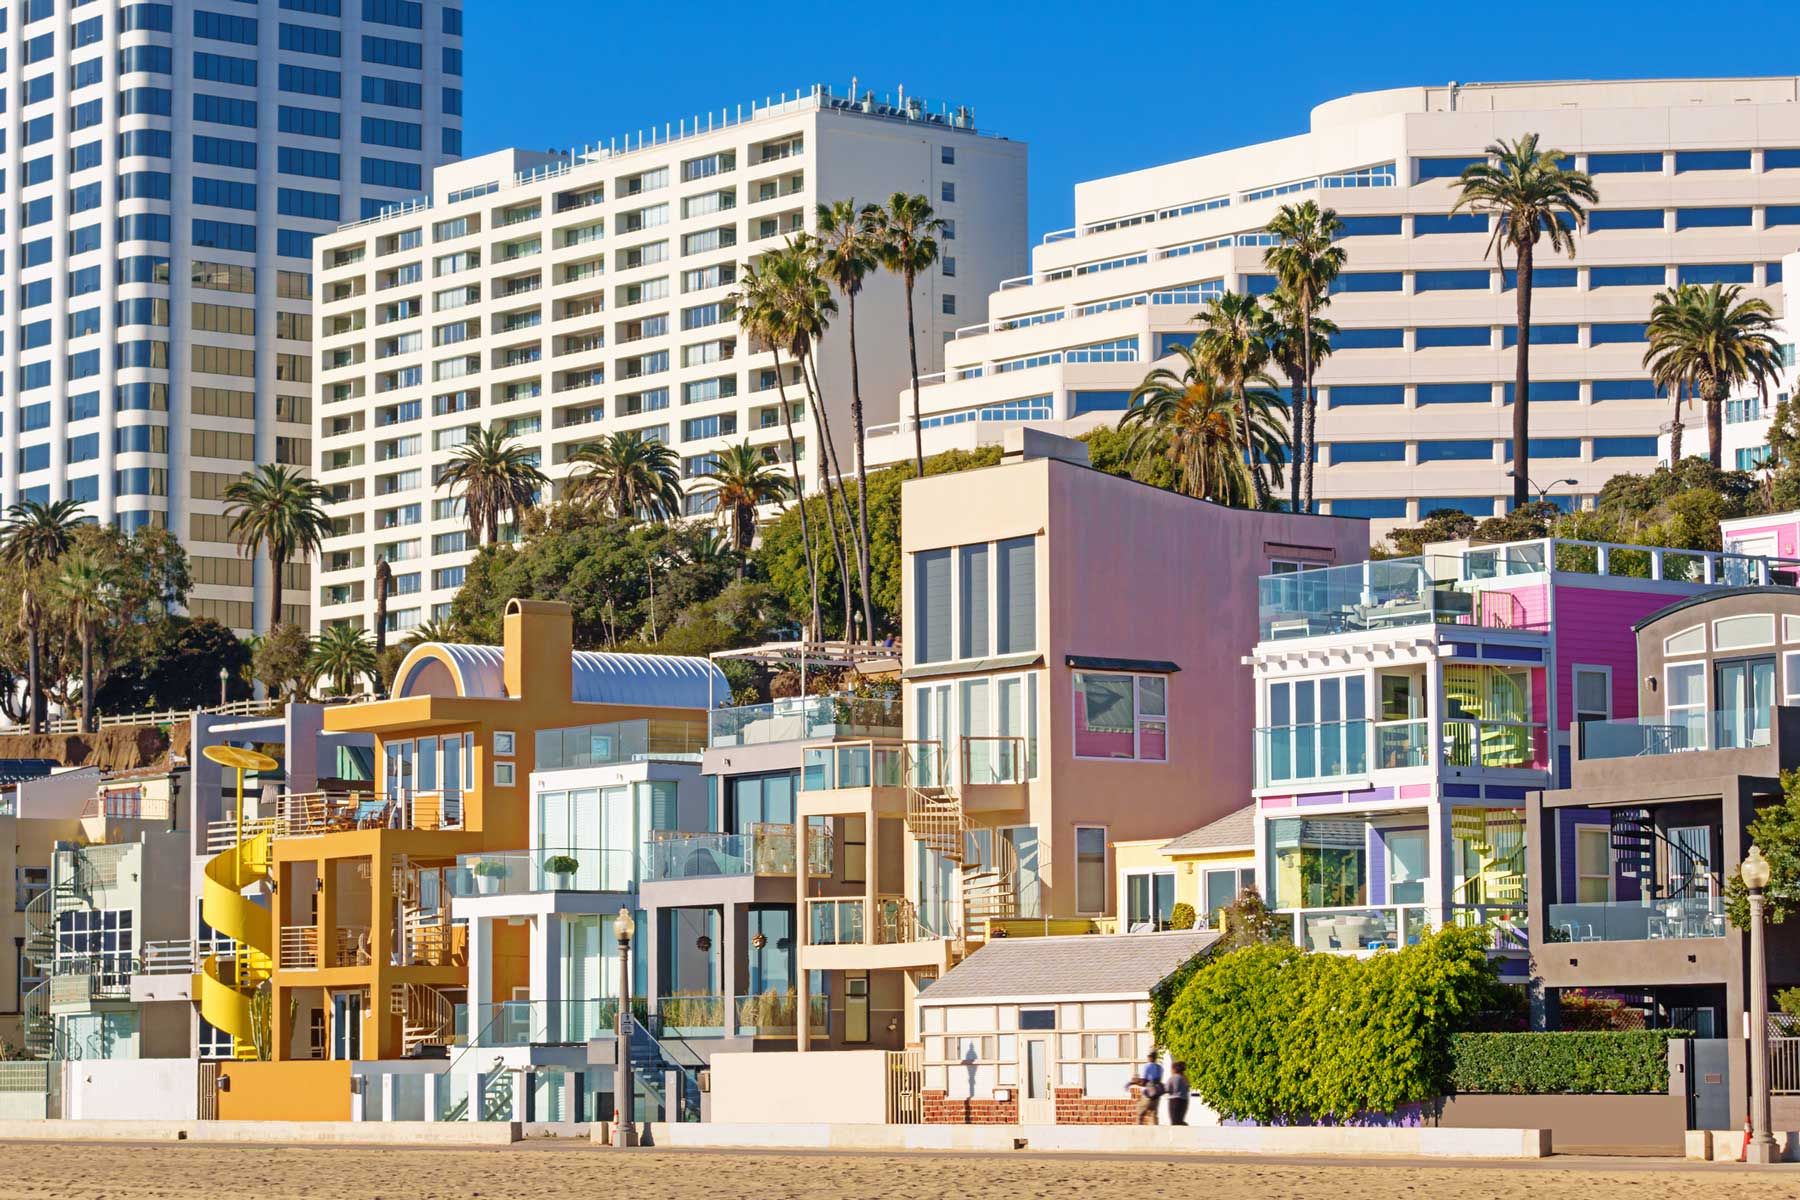 Osnovna fotografija šarenih domova i hotela na plaži u Santa Monici u Kaliforniji, sunčanog dana